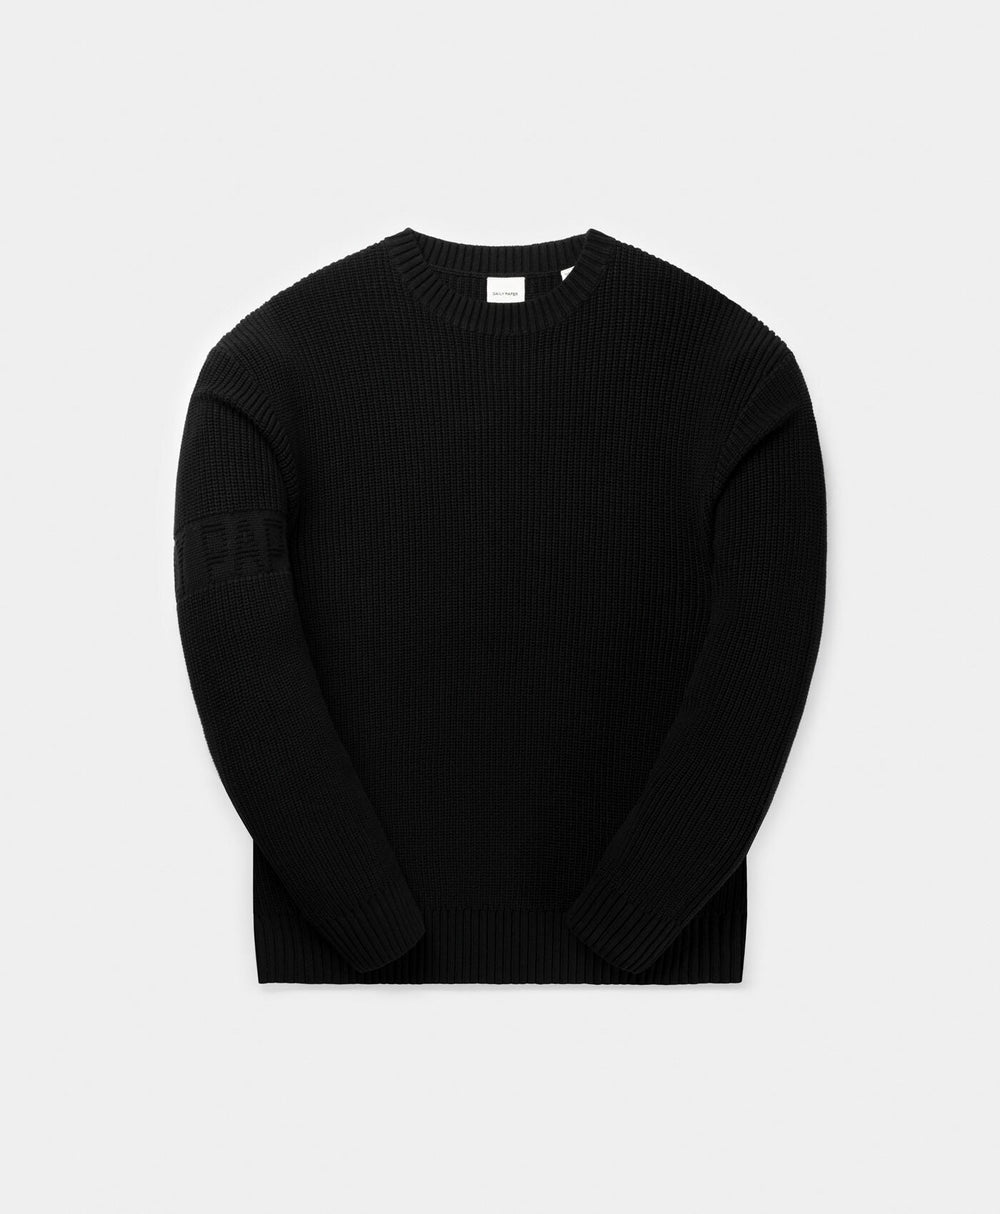 DP - Black Band Knit Sweater - Packshot - front 